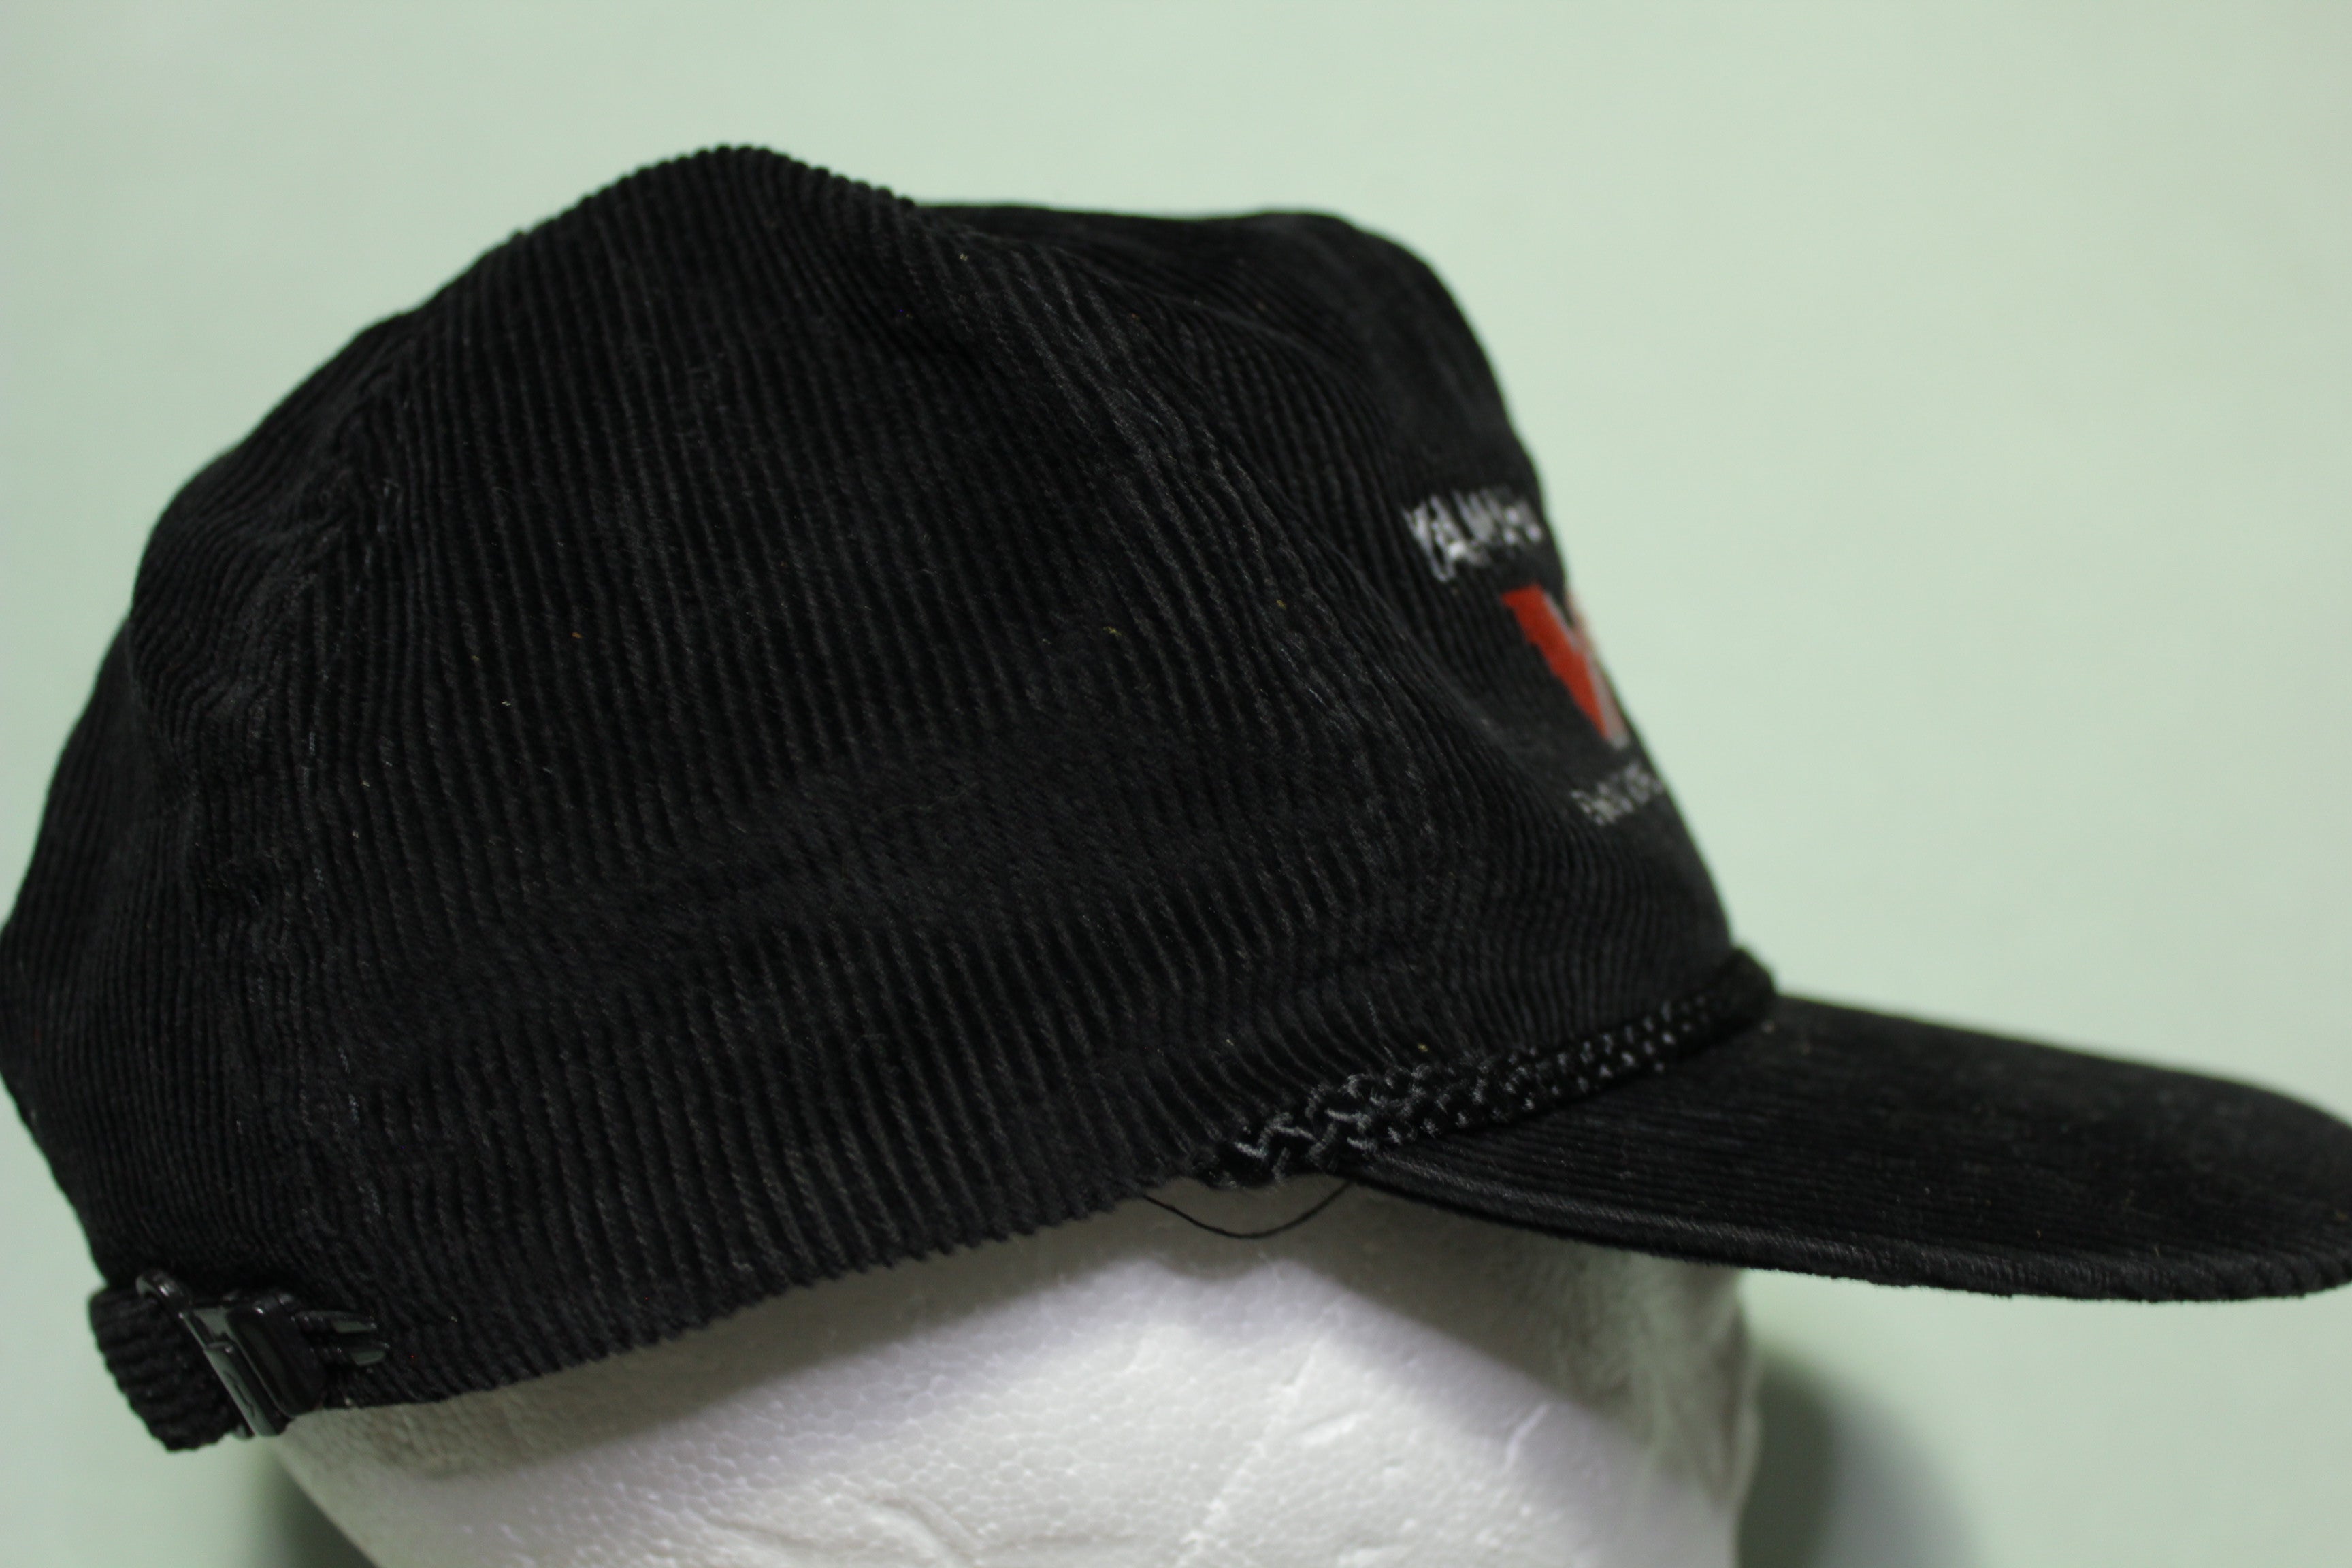 Vintage Yamaha VMAX 600 Snap back hat